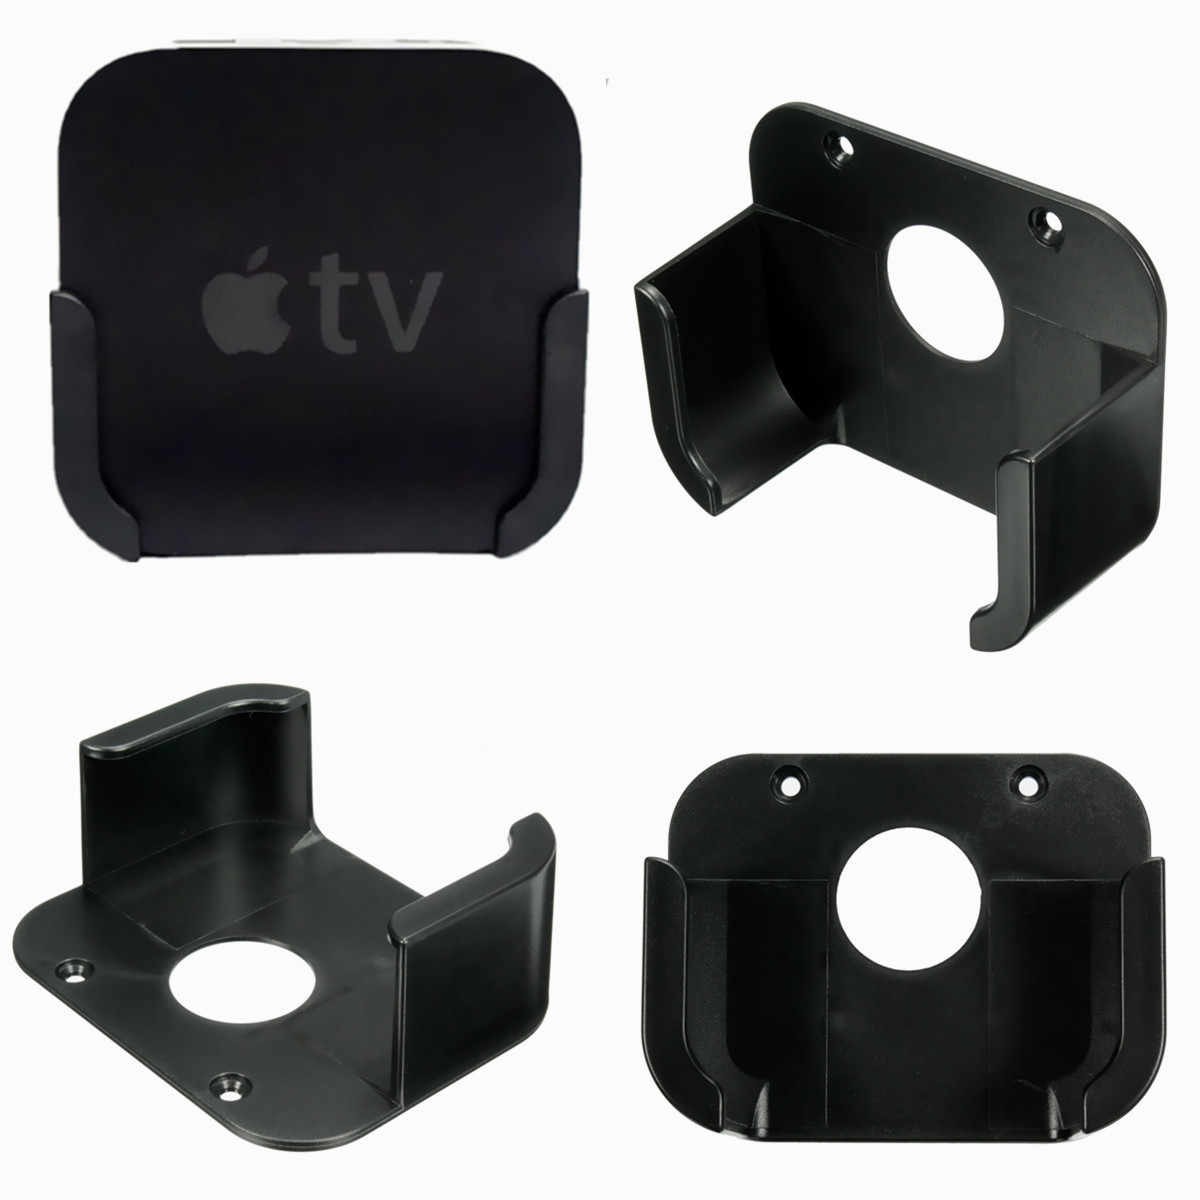 Media-Player-Wall-Mount-Case-Bracket-Holder-Stand-Cradle-For-Apple-TV-4-Gen-1042571